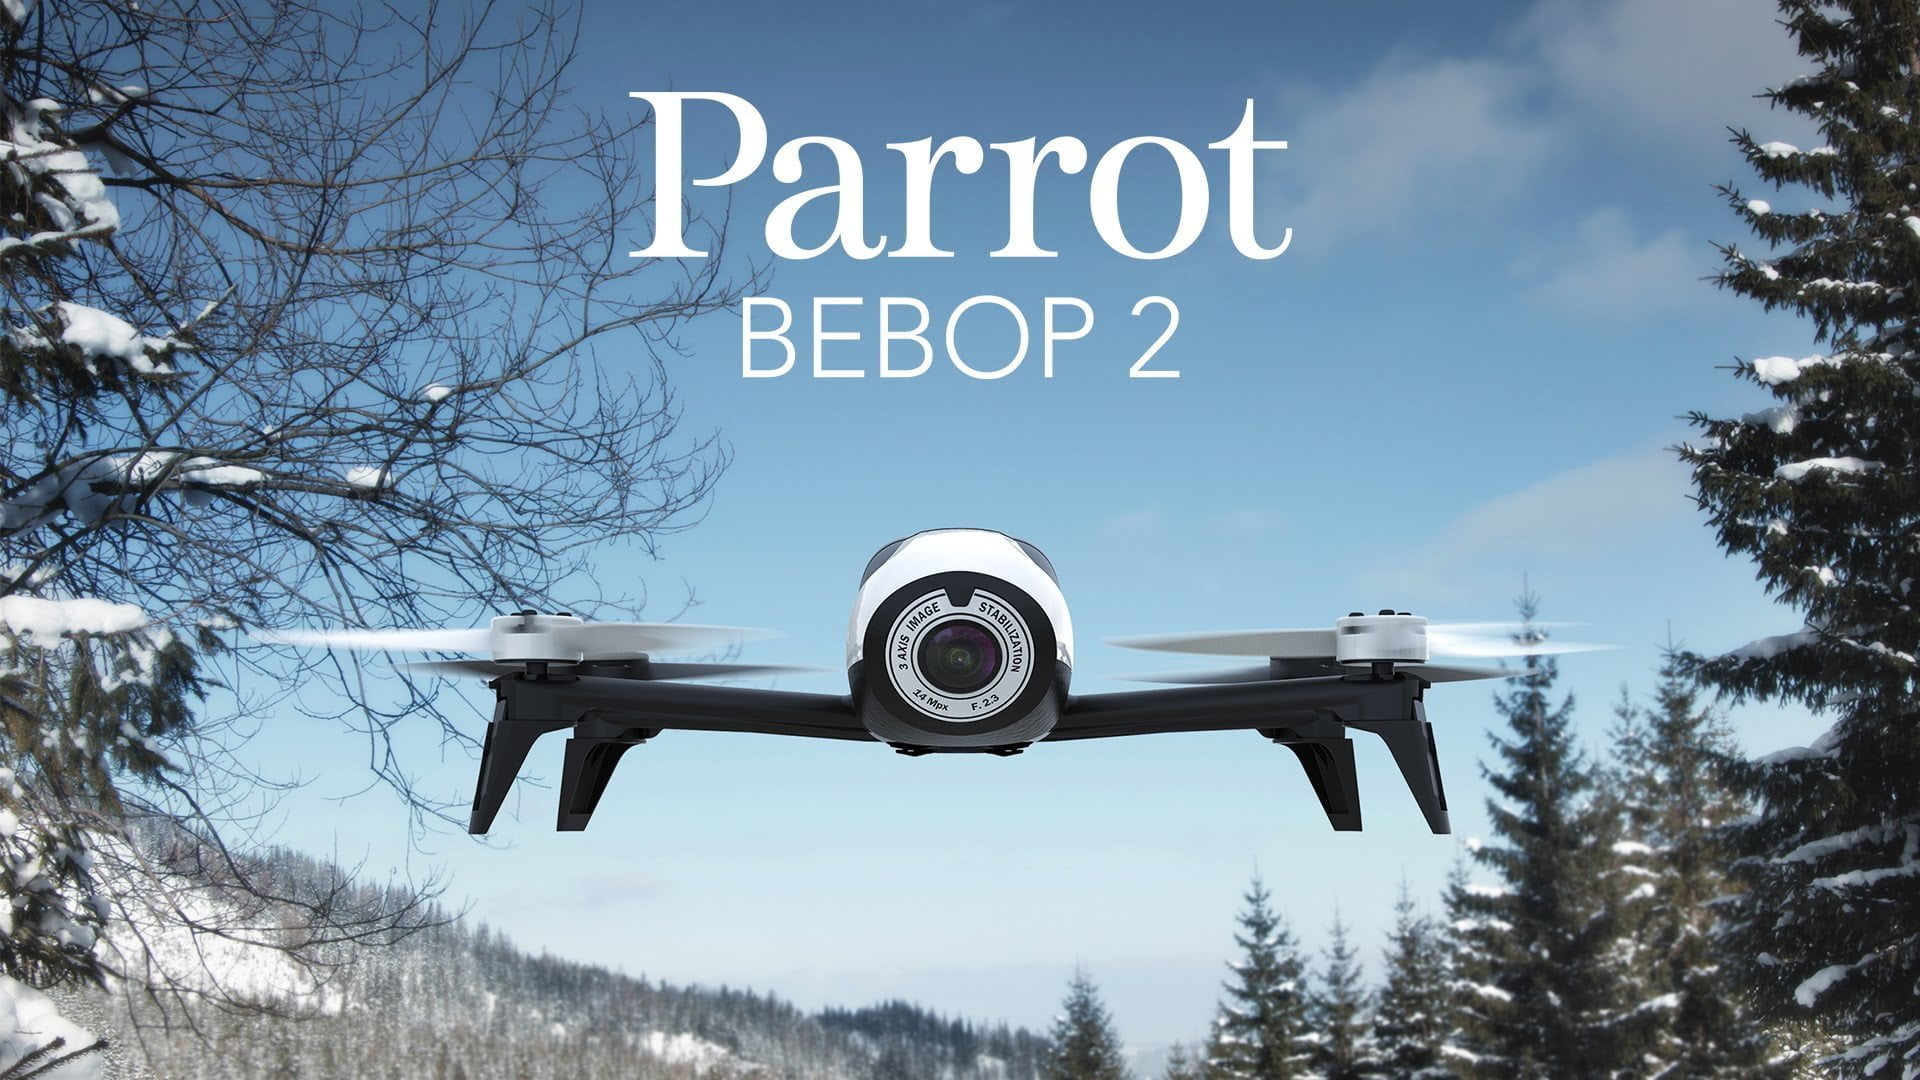 Nieuws: Parrot Bebop 2 is er! 20